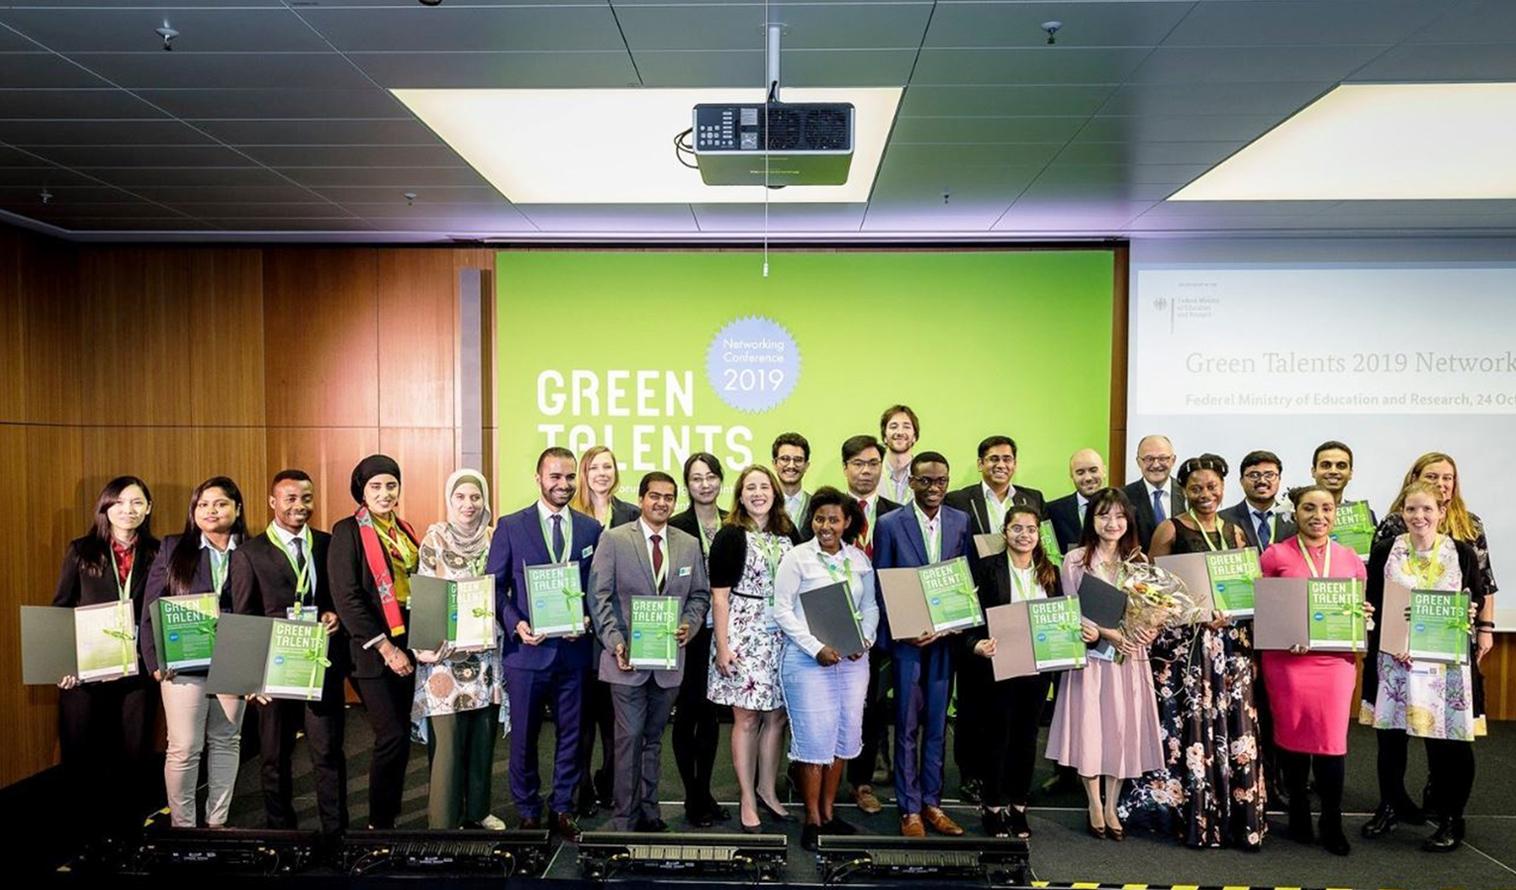 Gruppenfoto der Green Talents Preisträger 2019 mit dem Parlamentarischen Staatssekretär des BMBF, Herrn Dr. Michael Meister.